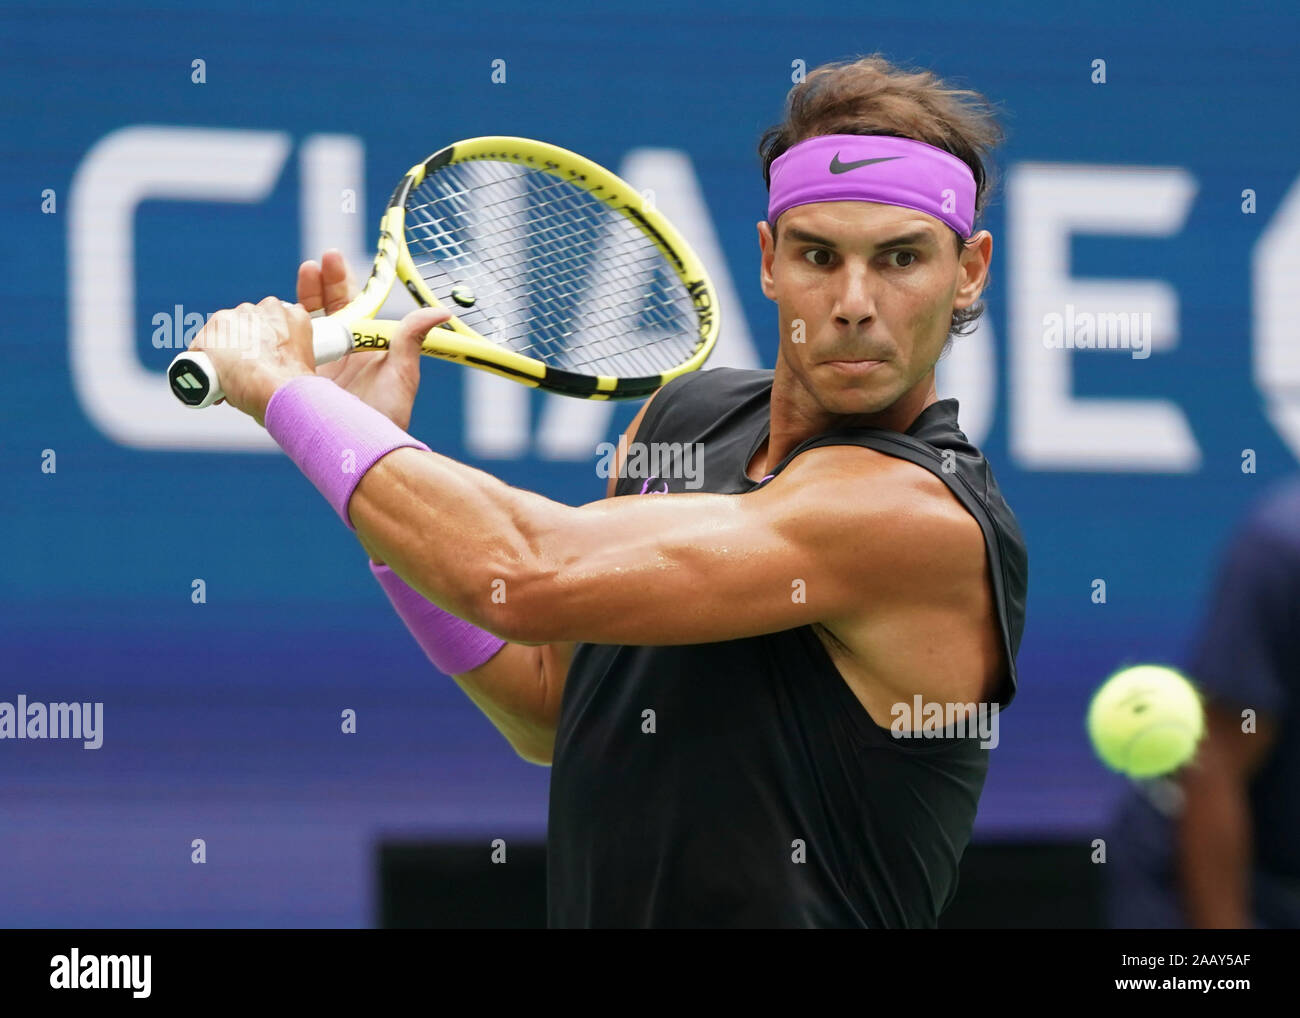 Joueur de tennis espagnol Rafael Nadal (ESP) jouer a sauvé, tourné pendant  le tournoi de tennis de l'US Open 2019, New York City, New York State, USA  Photo Stock - Alamy